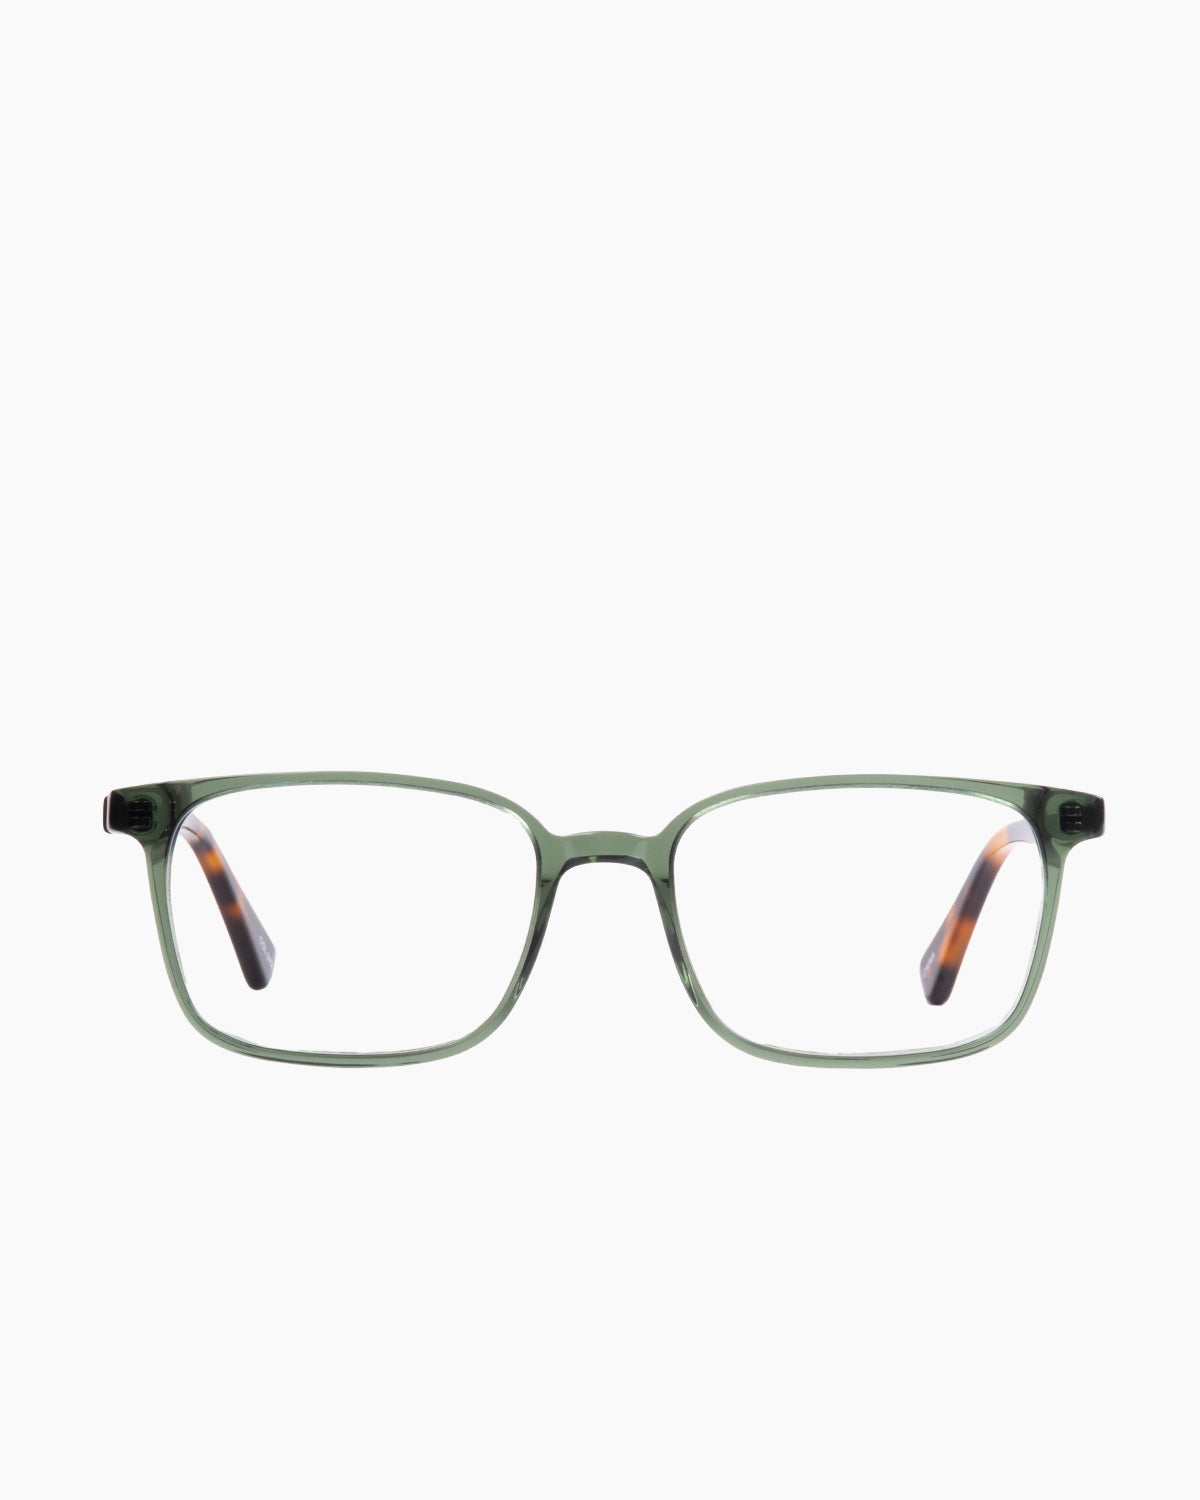 Evolve - Benton - 242 | glasses bar:  Marie-Sophie Dion